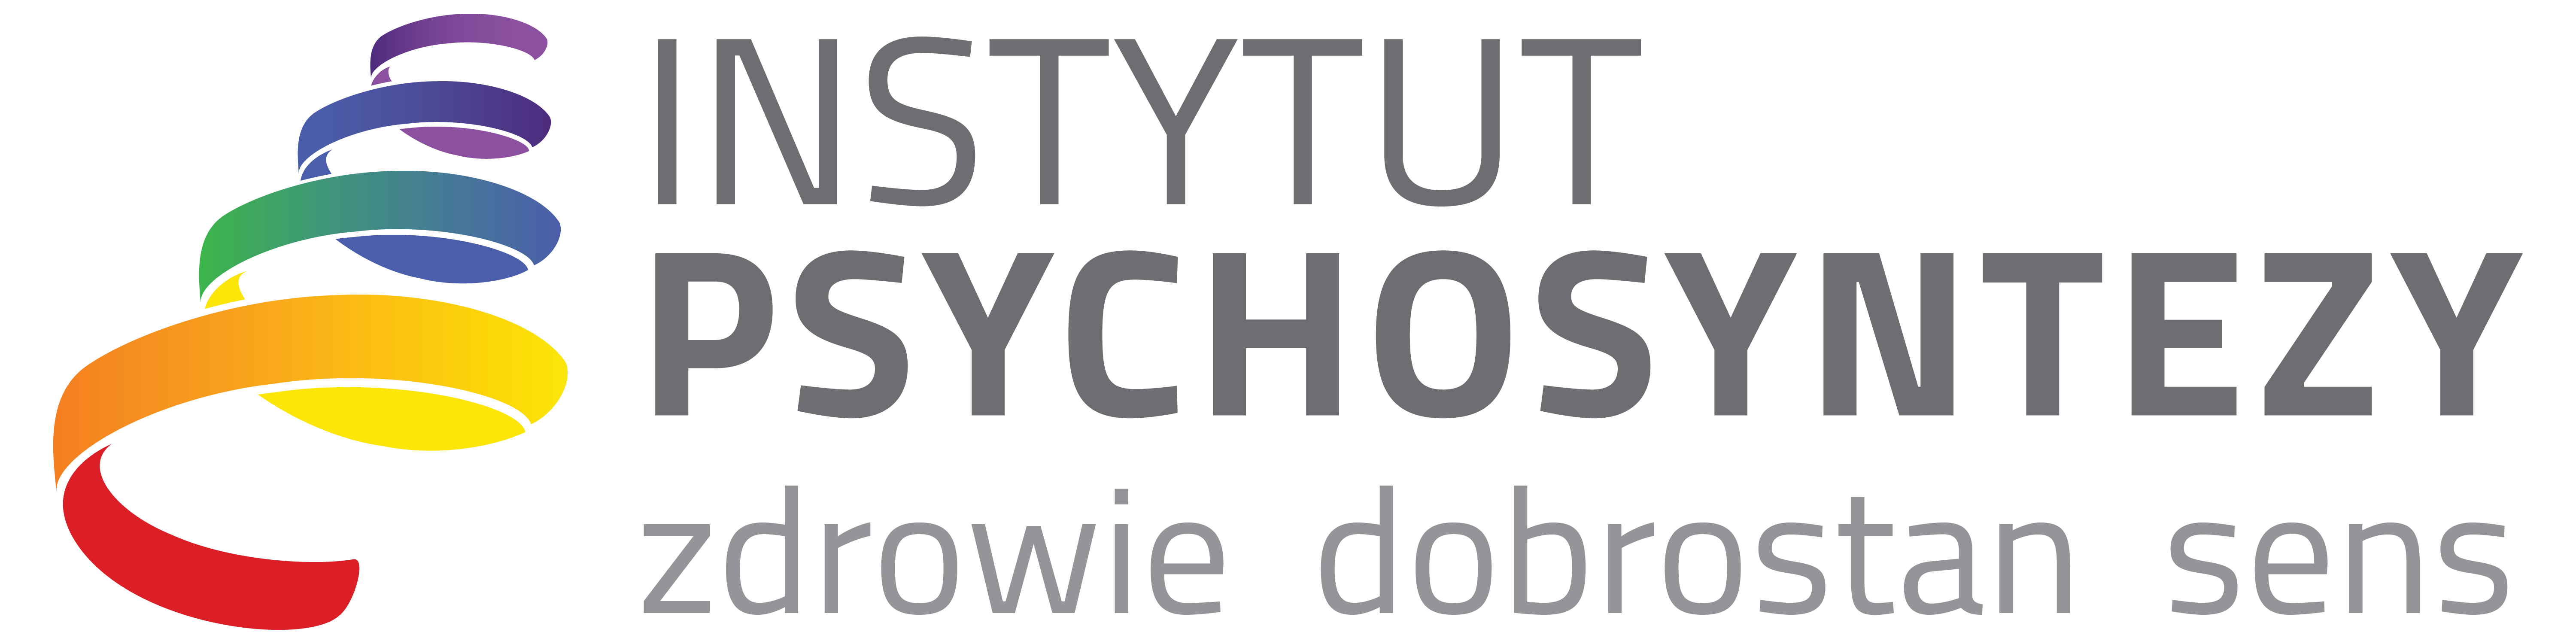 Instytut Psychosyntezy